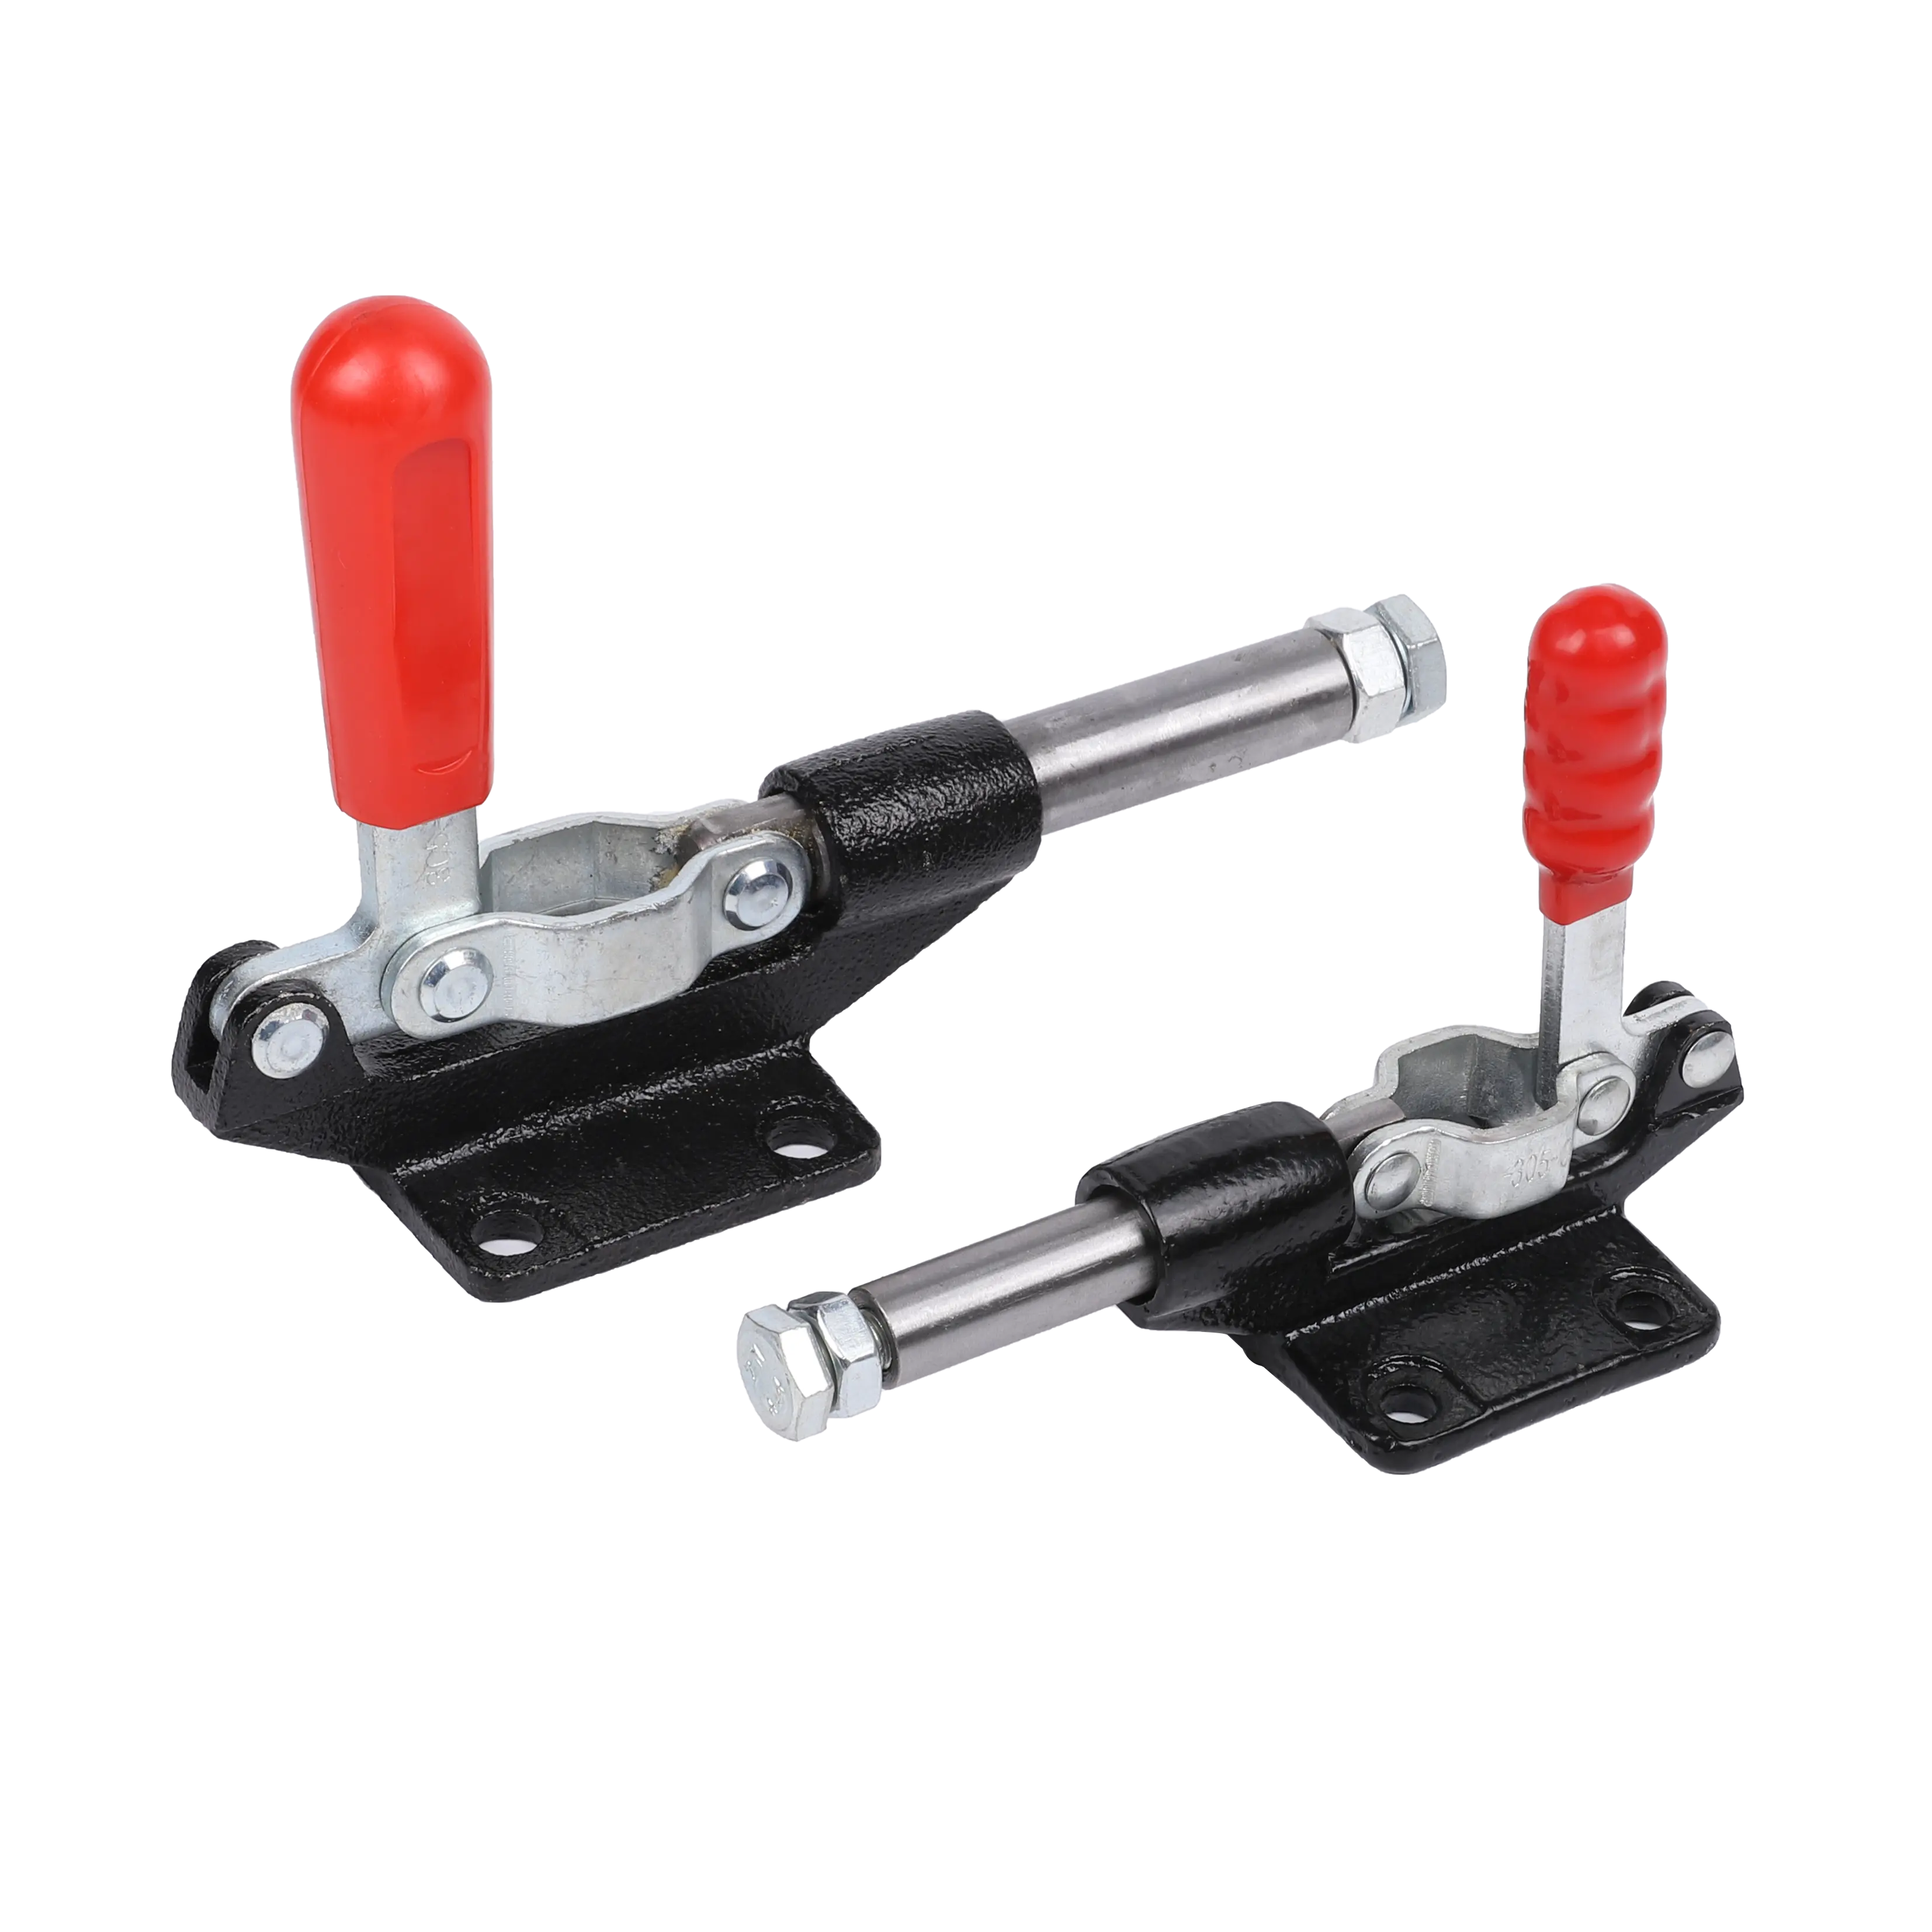 Braçadeira de pressão horizontal 305-CM 305-EM, braçadeira rápida, ferramenta fixa, braçadeira de alternância, ferramenta manual de liberação, dispositivo rápido